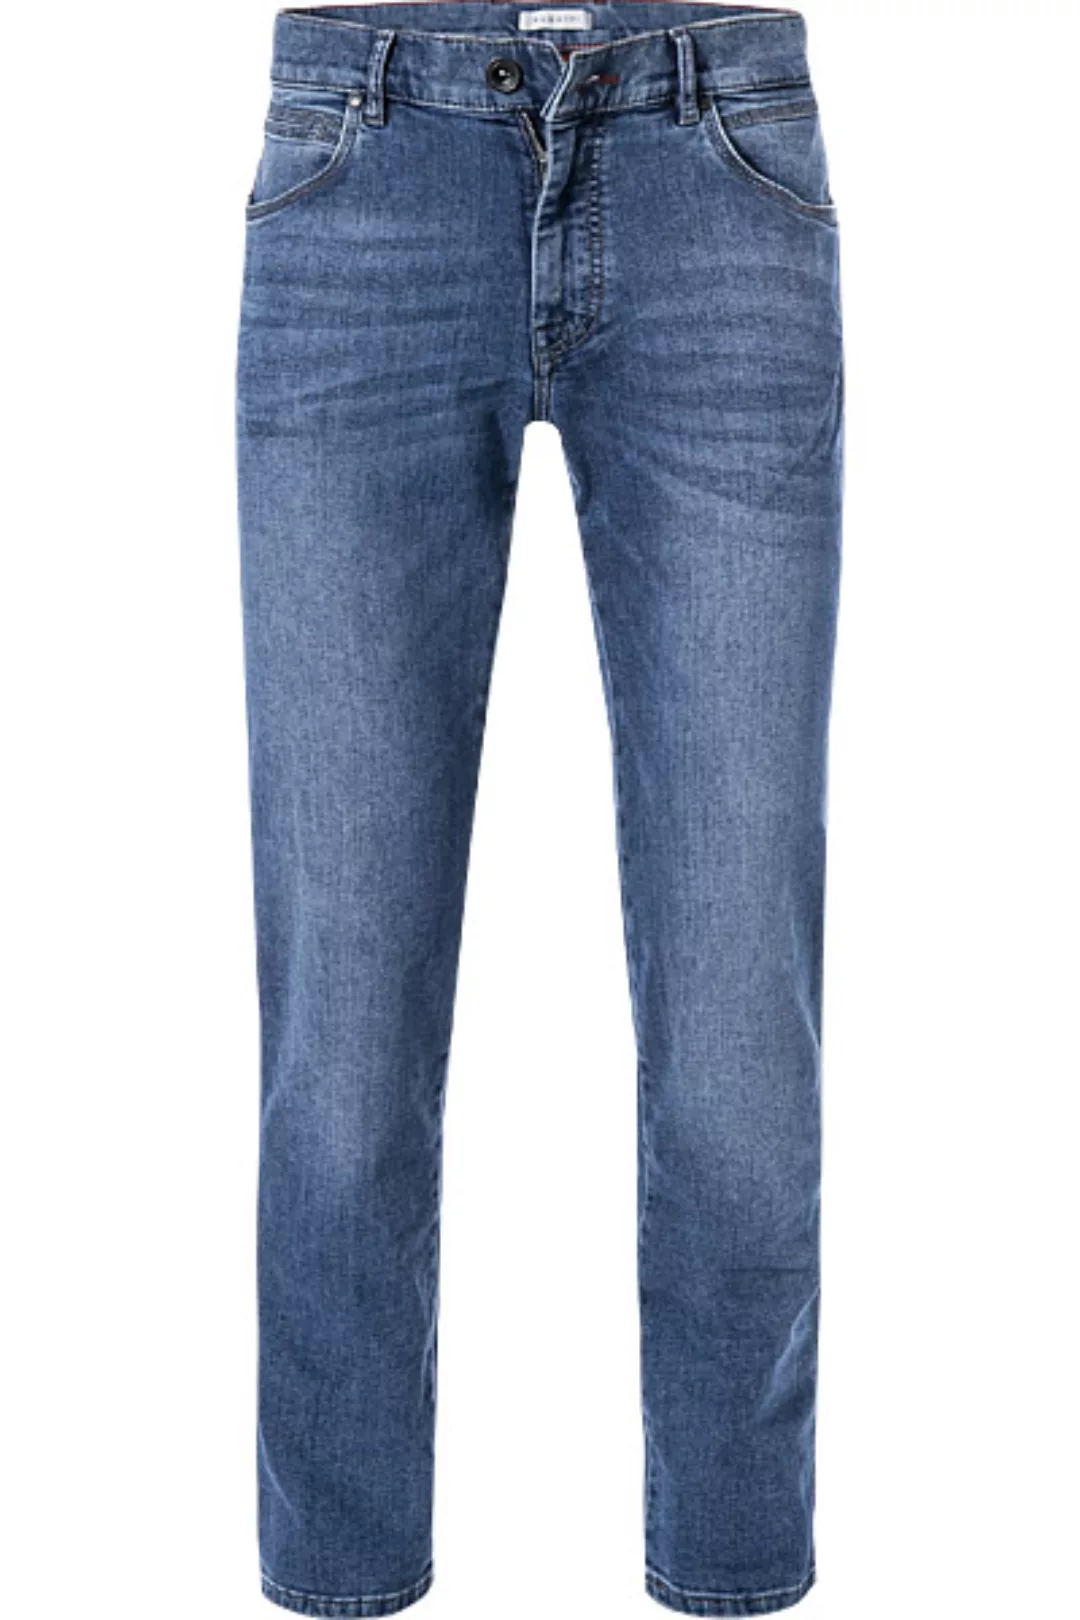 bugatti Jeans 3038D/86676/361 günstig online kaufen